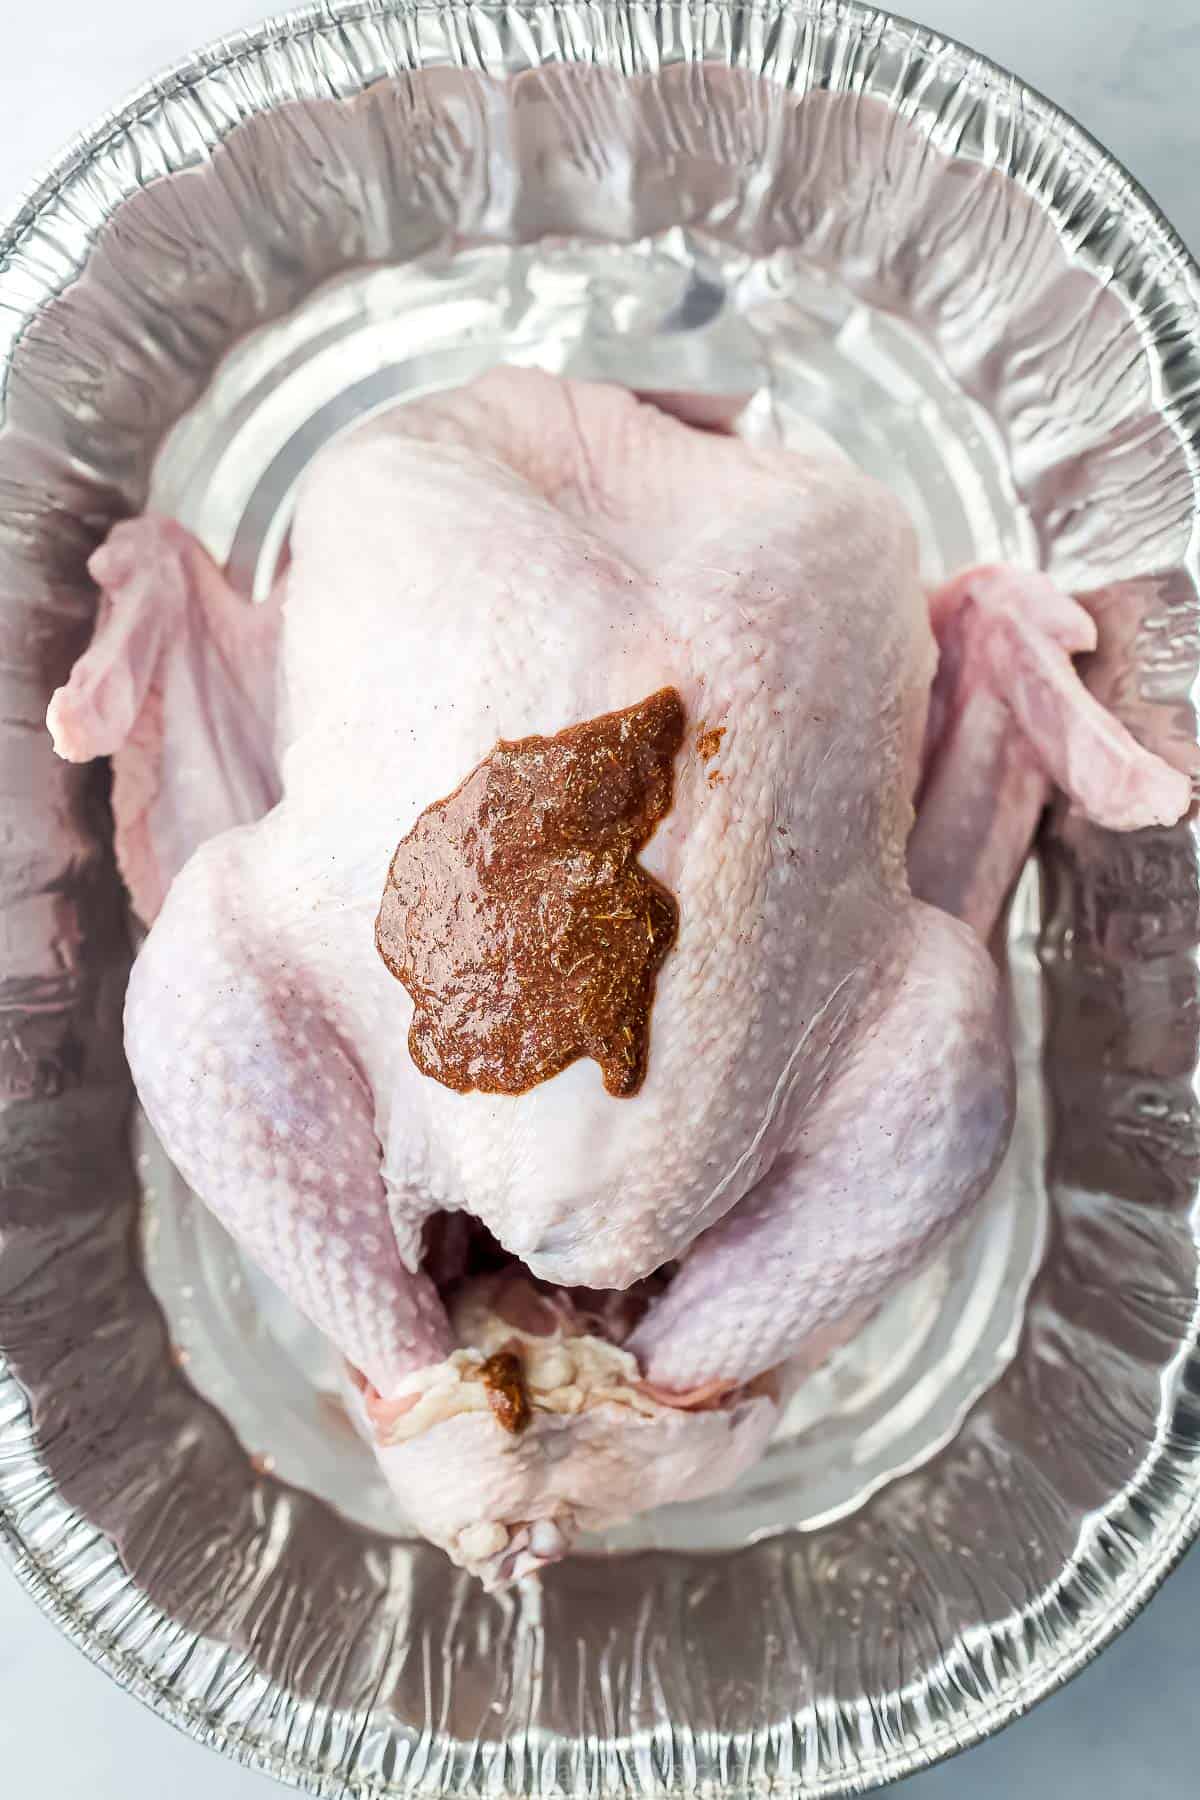 maple spice rub on a raw turkey in a roasting pan